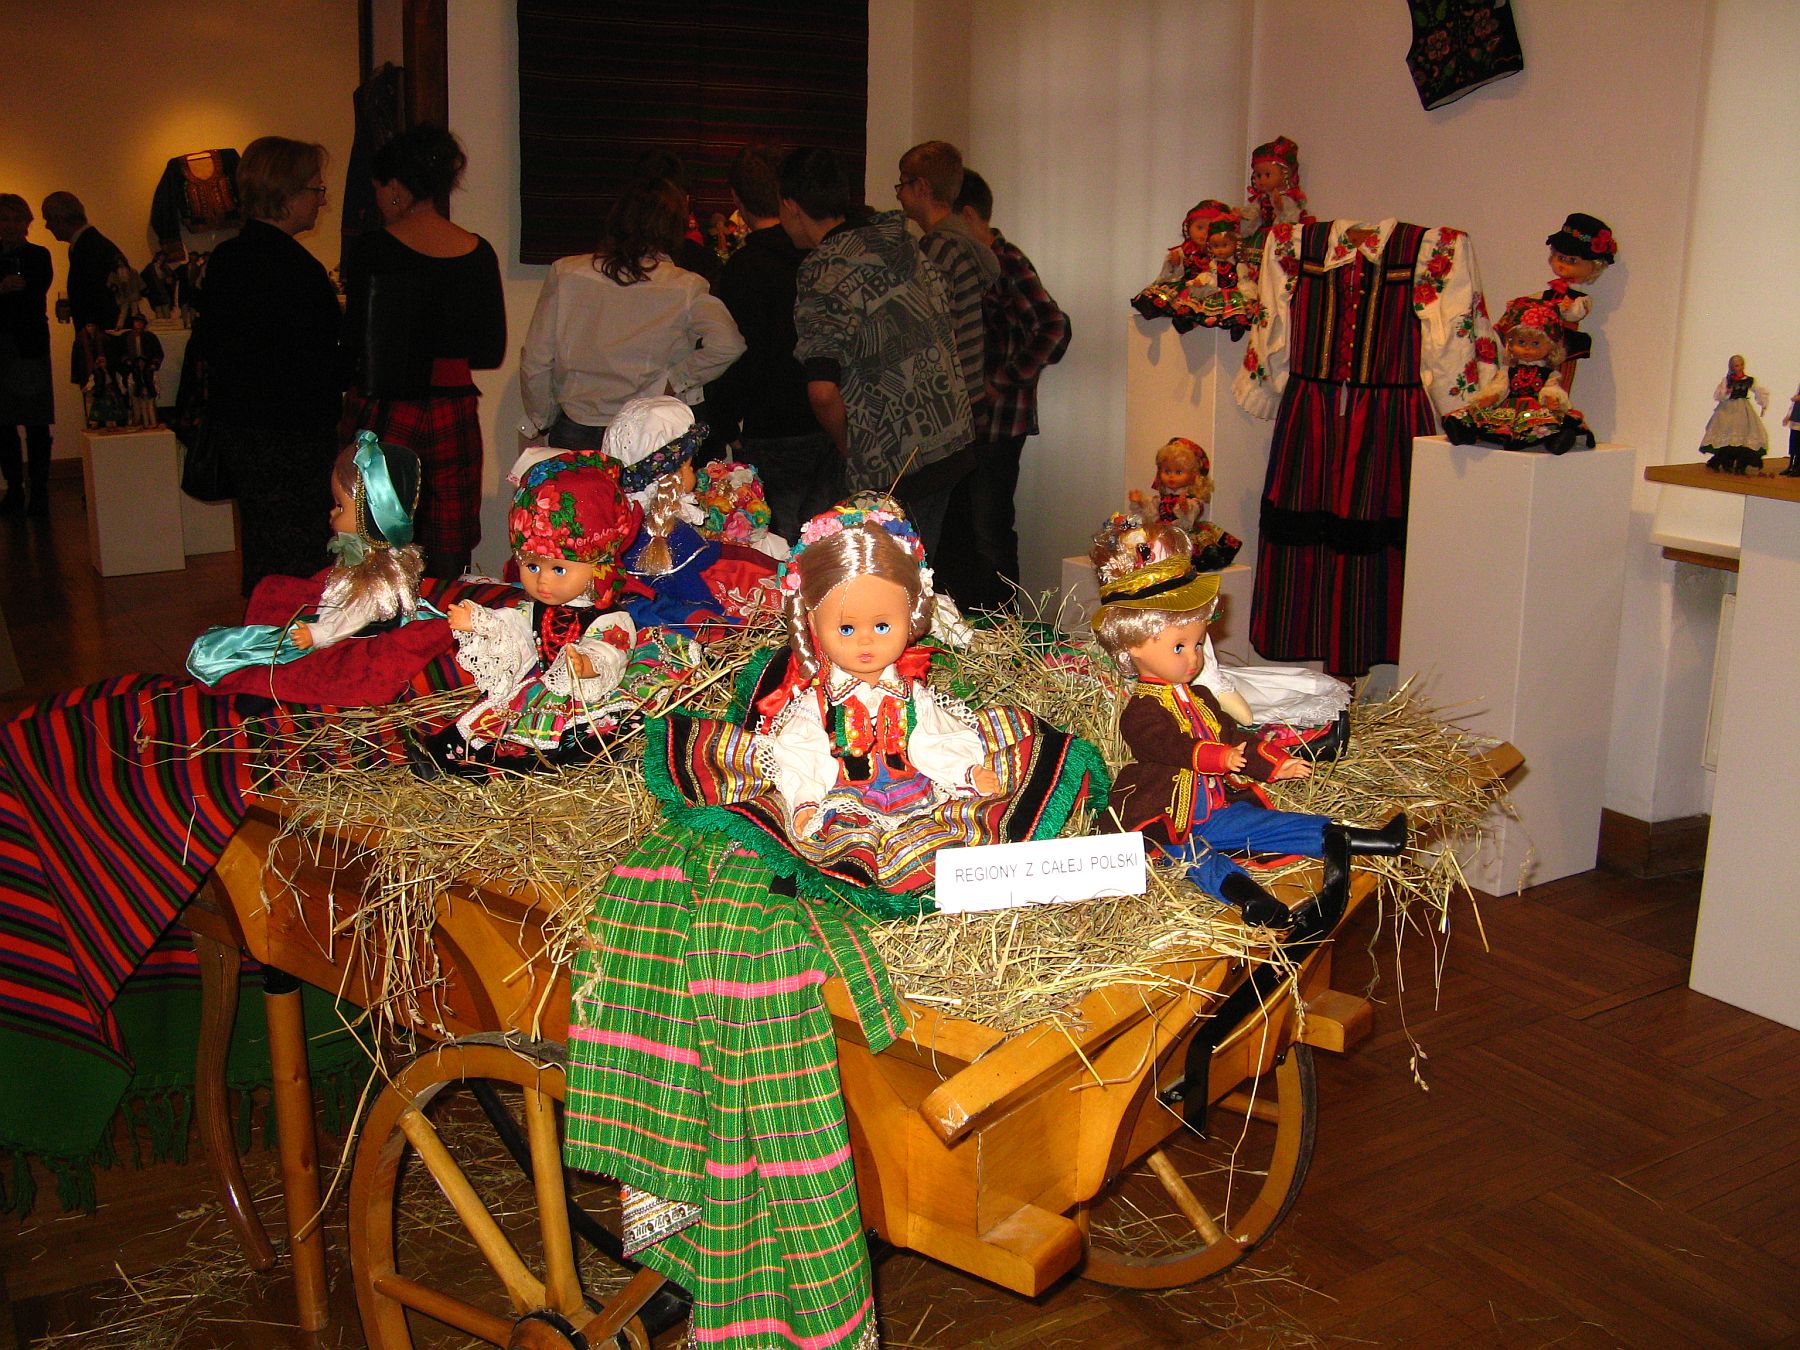 Centralnym elementem jednej z sal jest wz z lalkami ubranymi w polskie stroje regionalne.